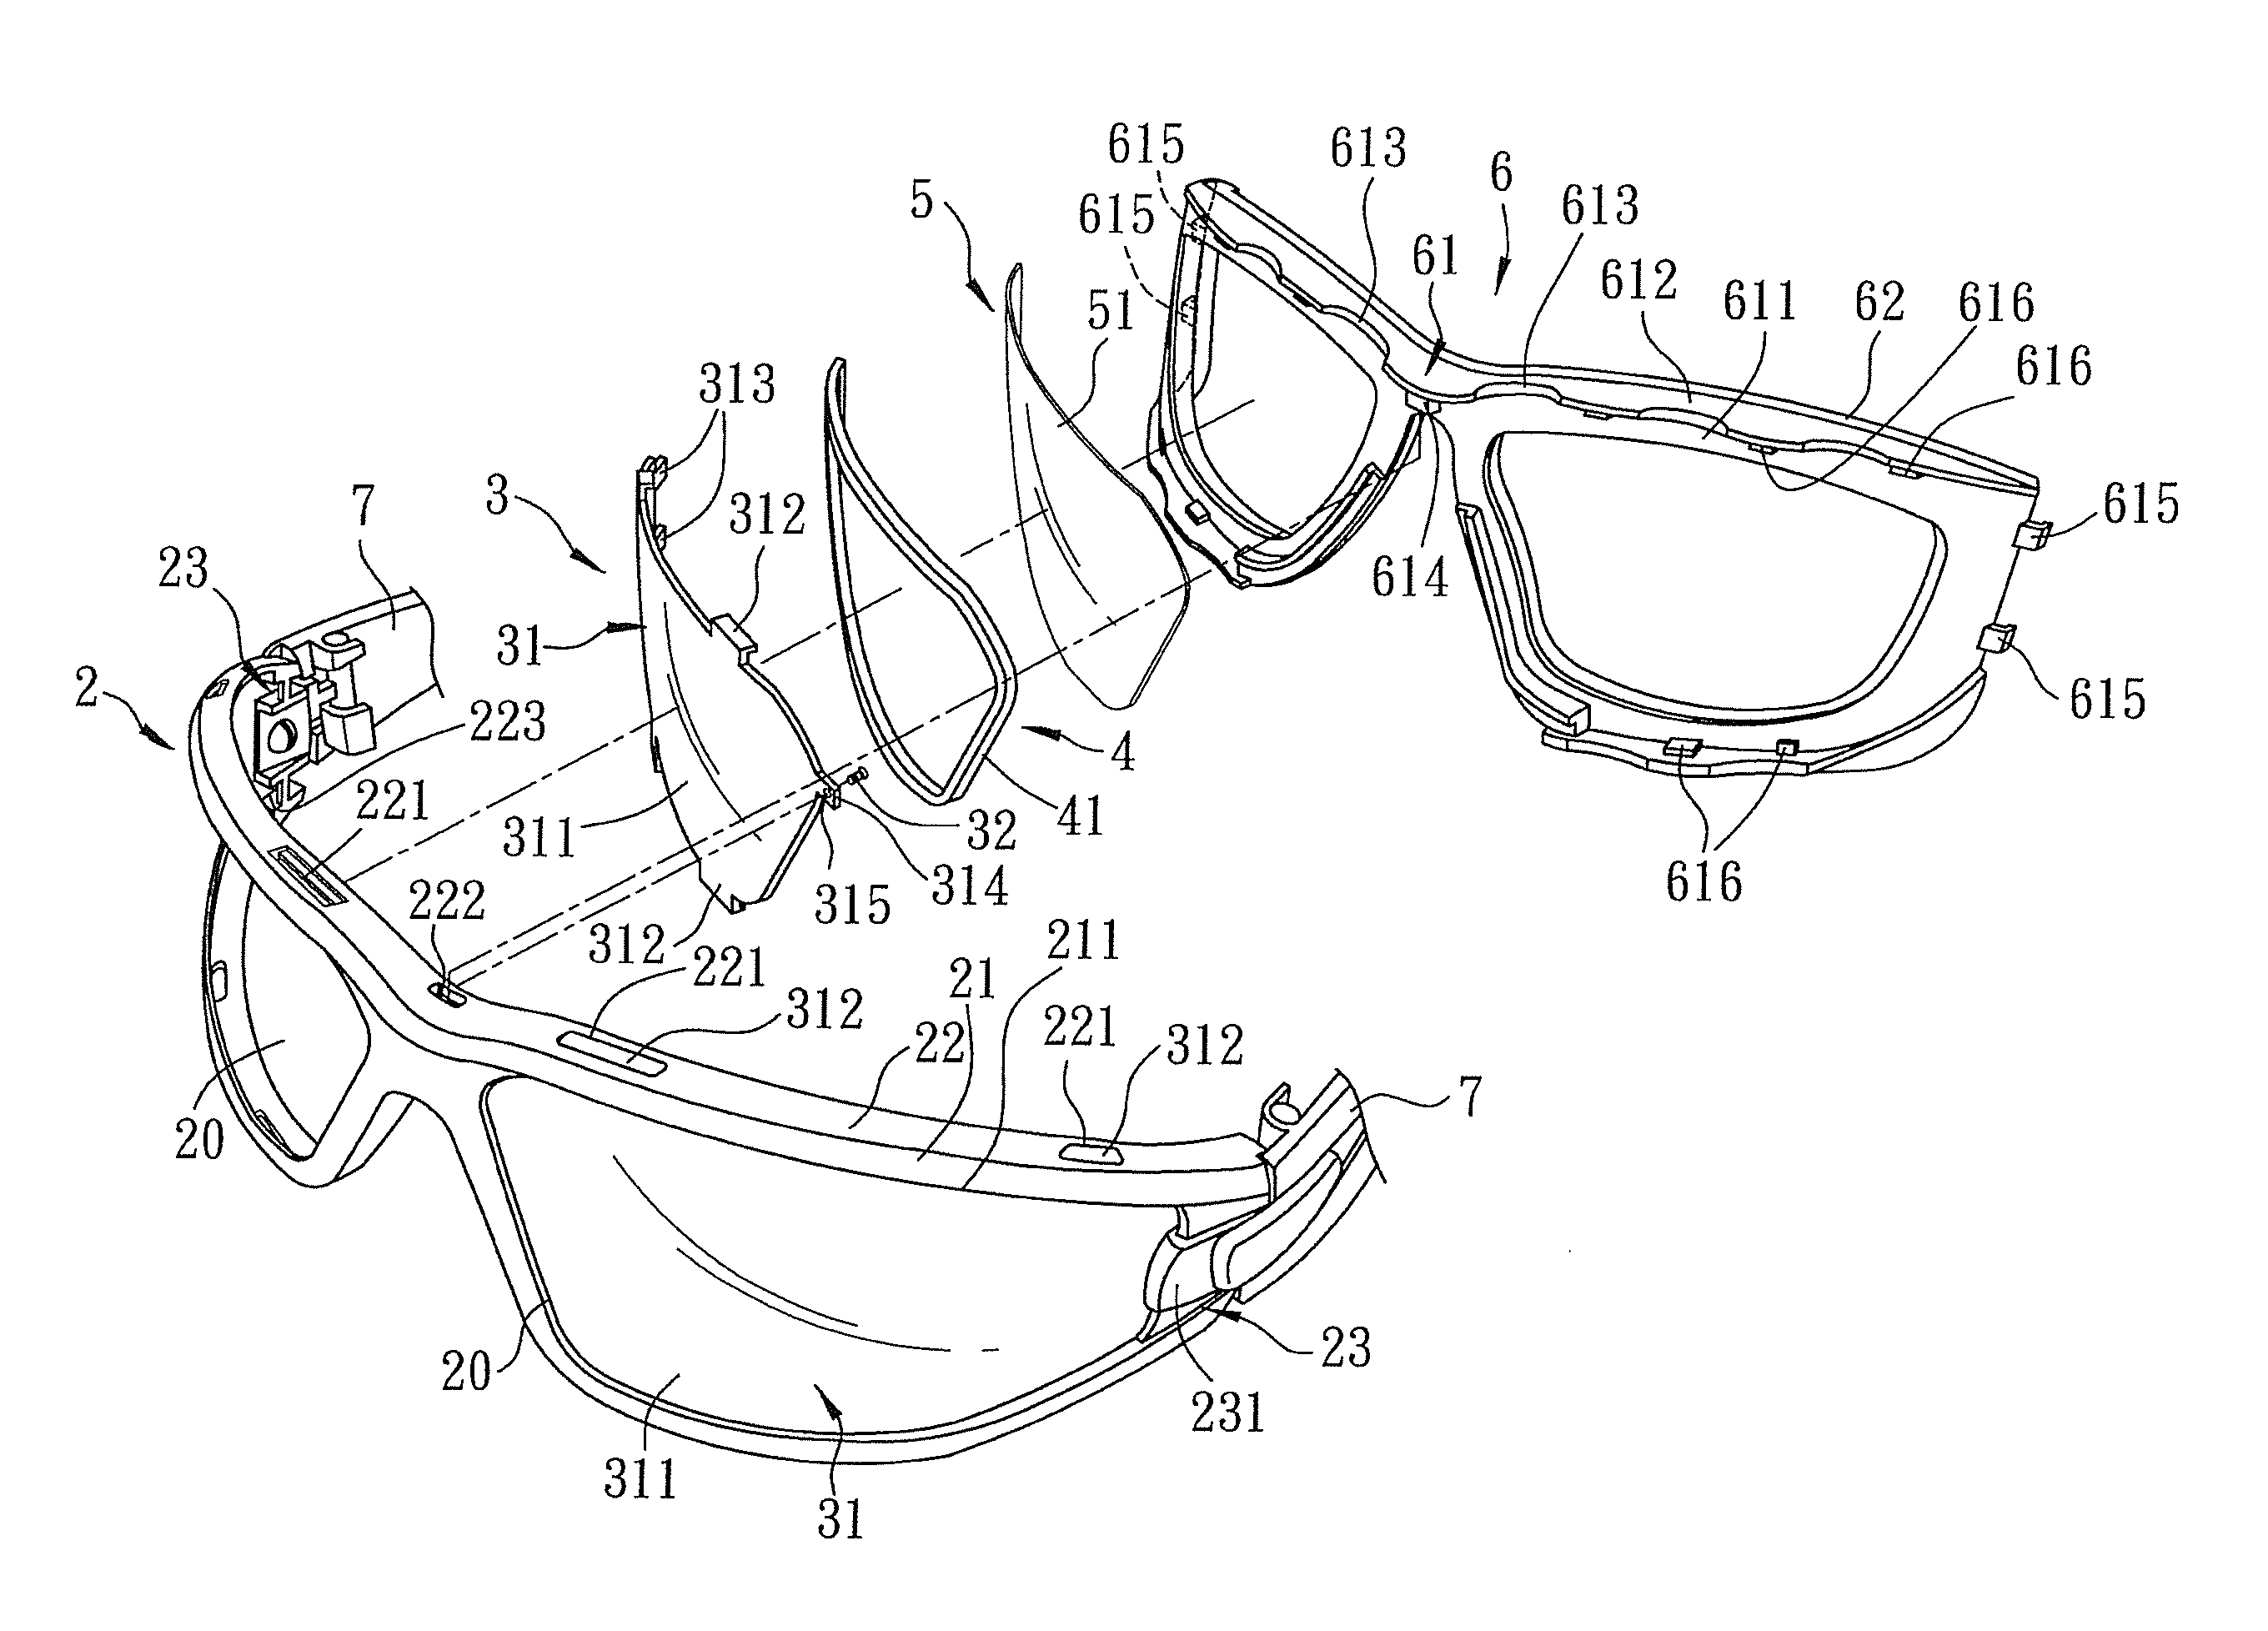 Eyeglasses having bilayered lens asssembly